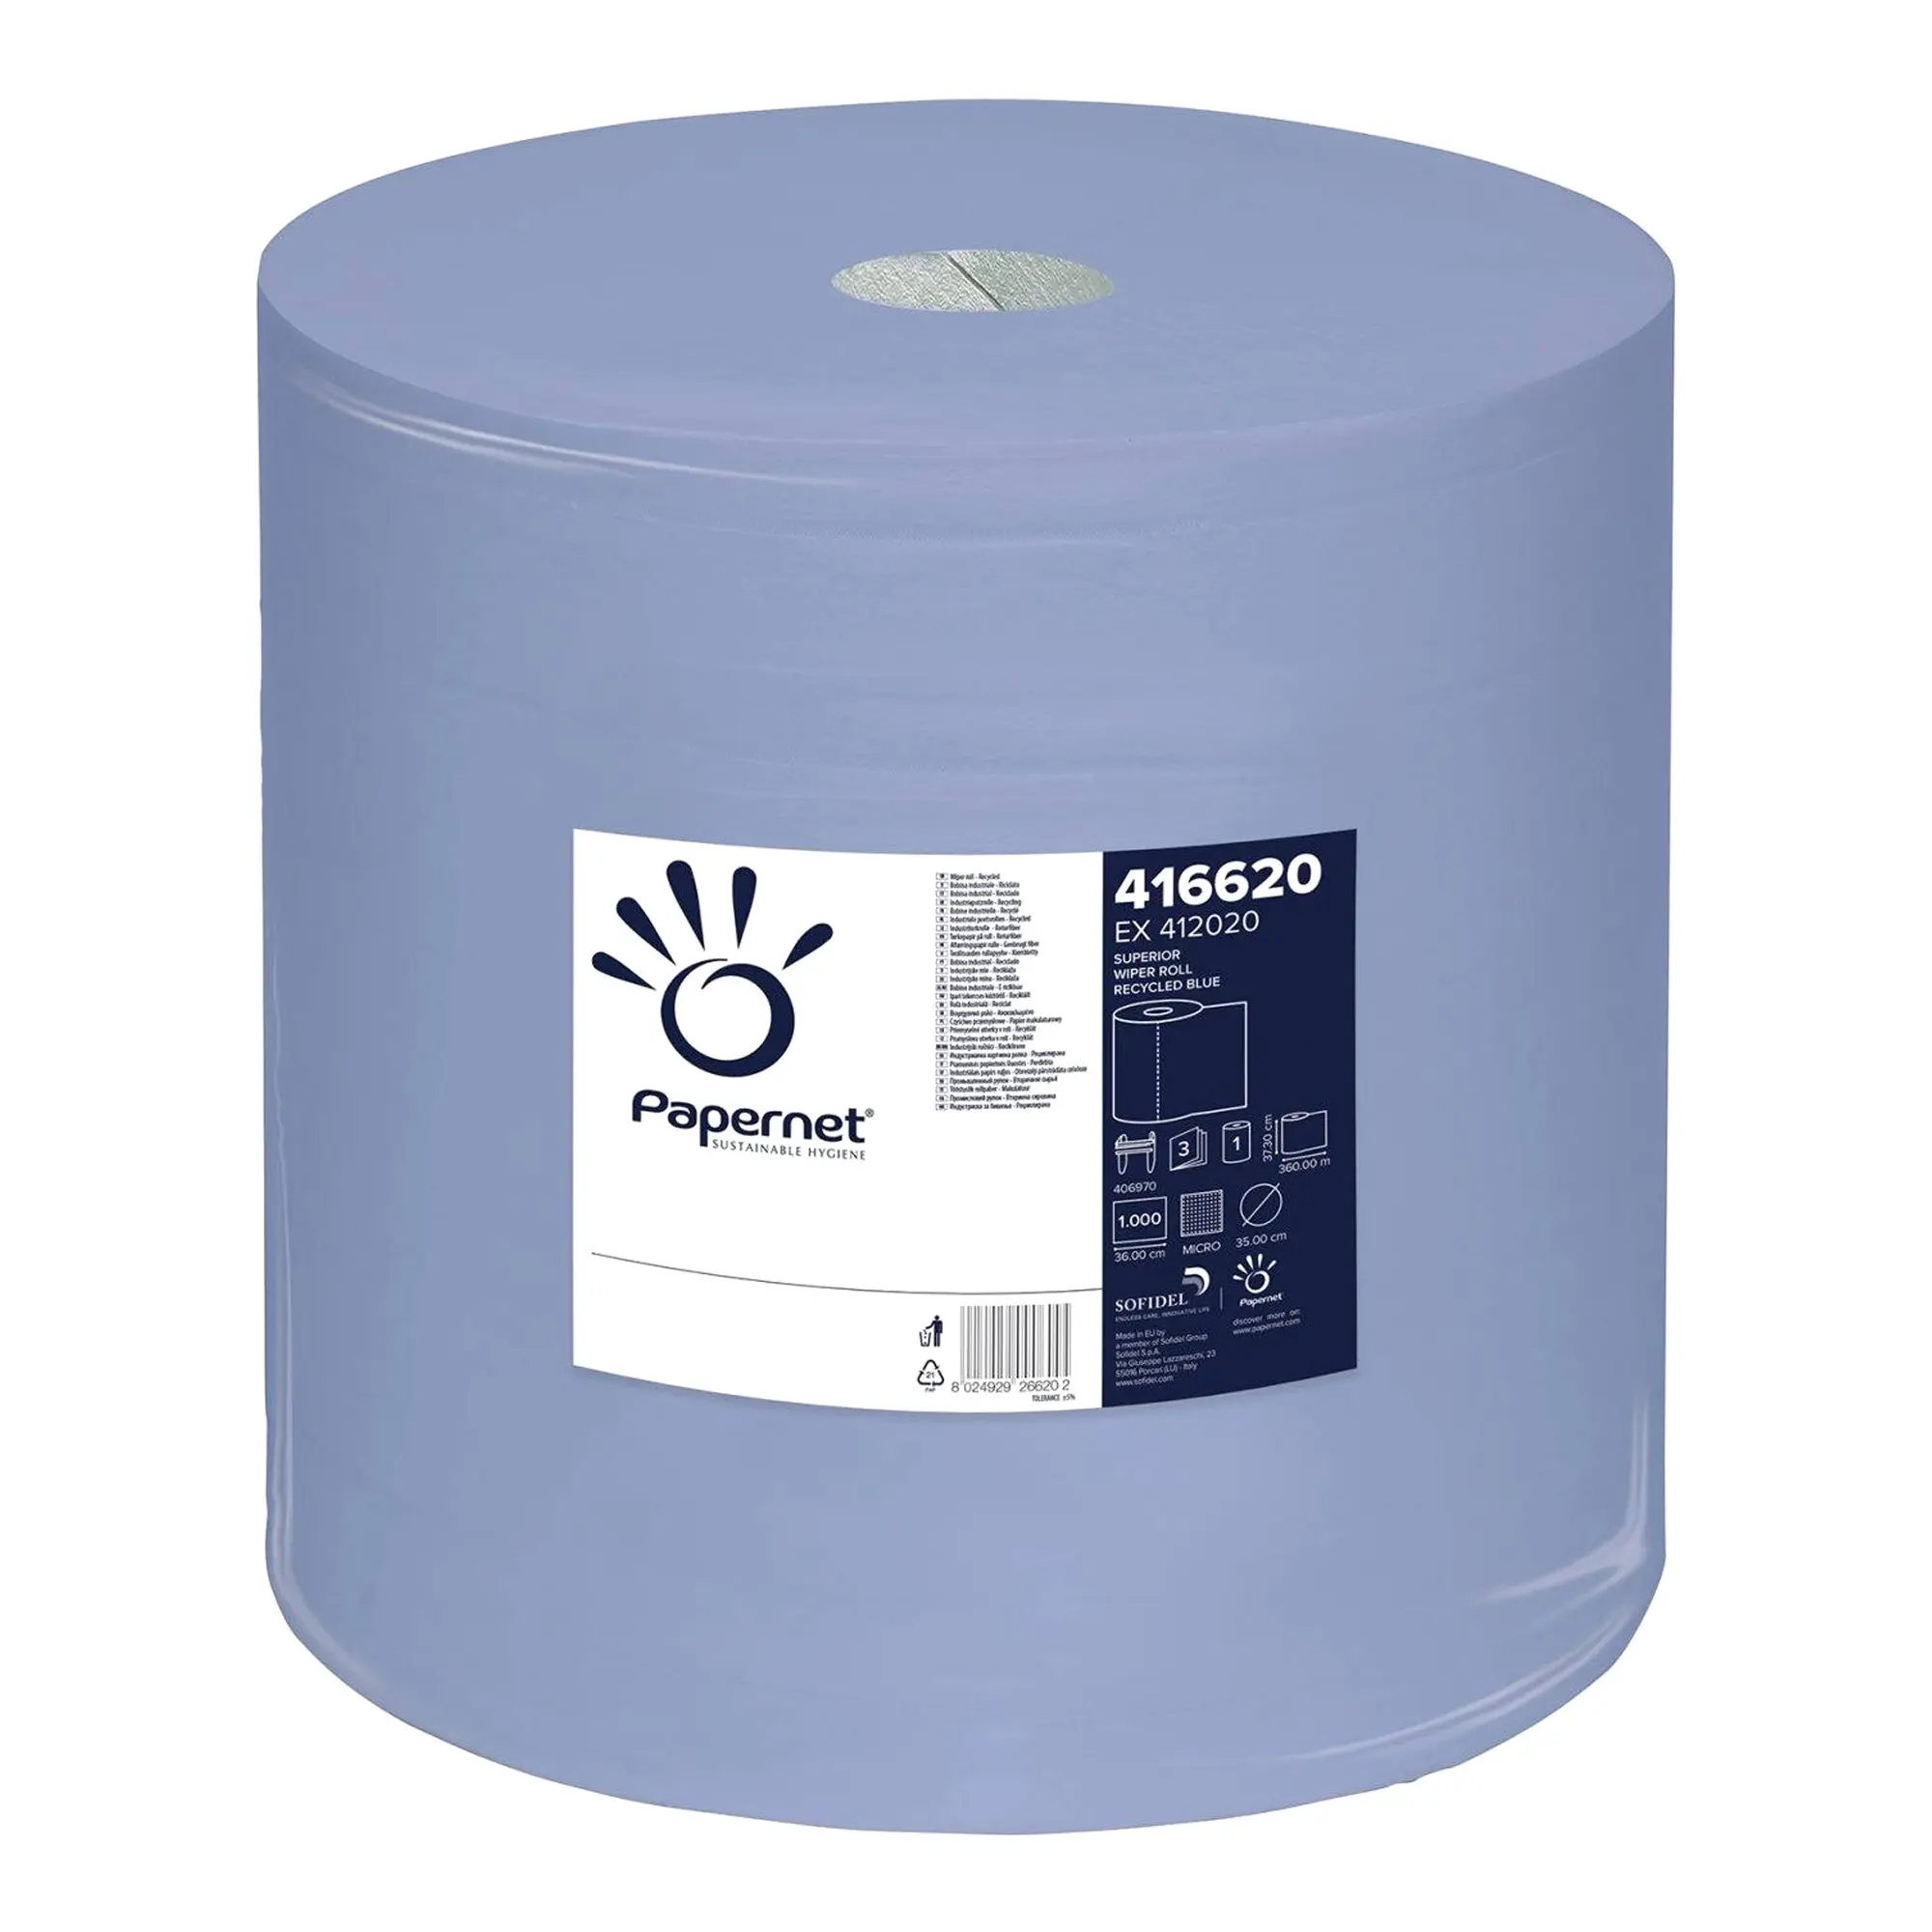 Papernet Industrieputztuchrolle blau 3-lagig, 37,3 cm breit, 1000 Tücher